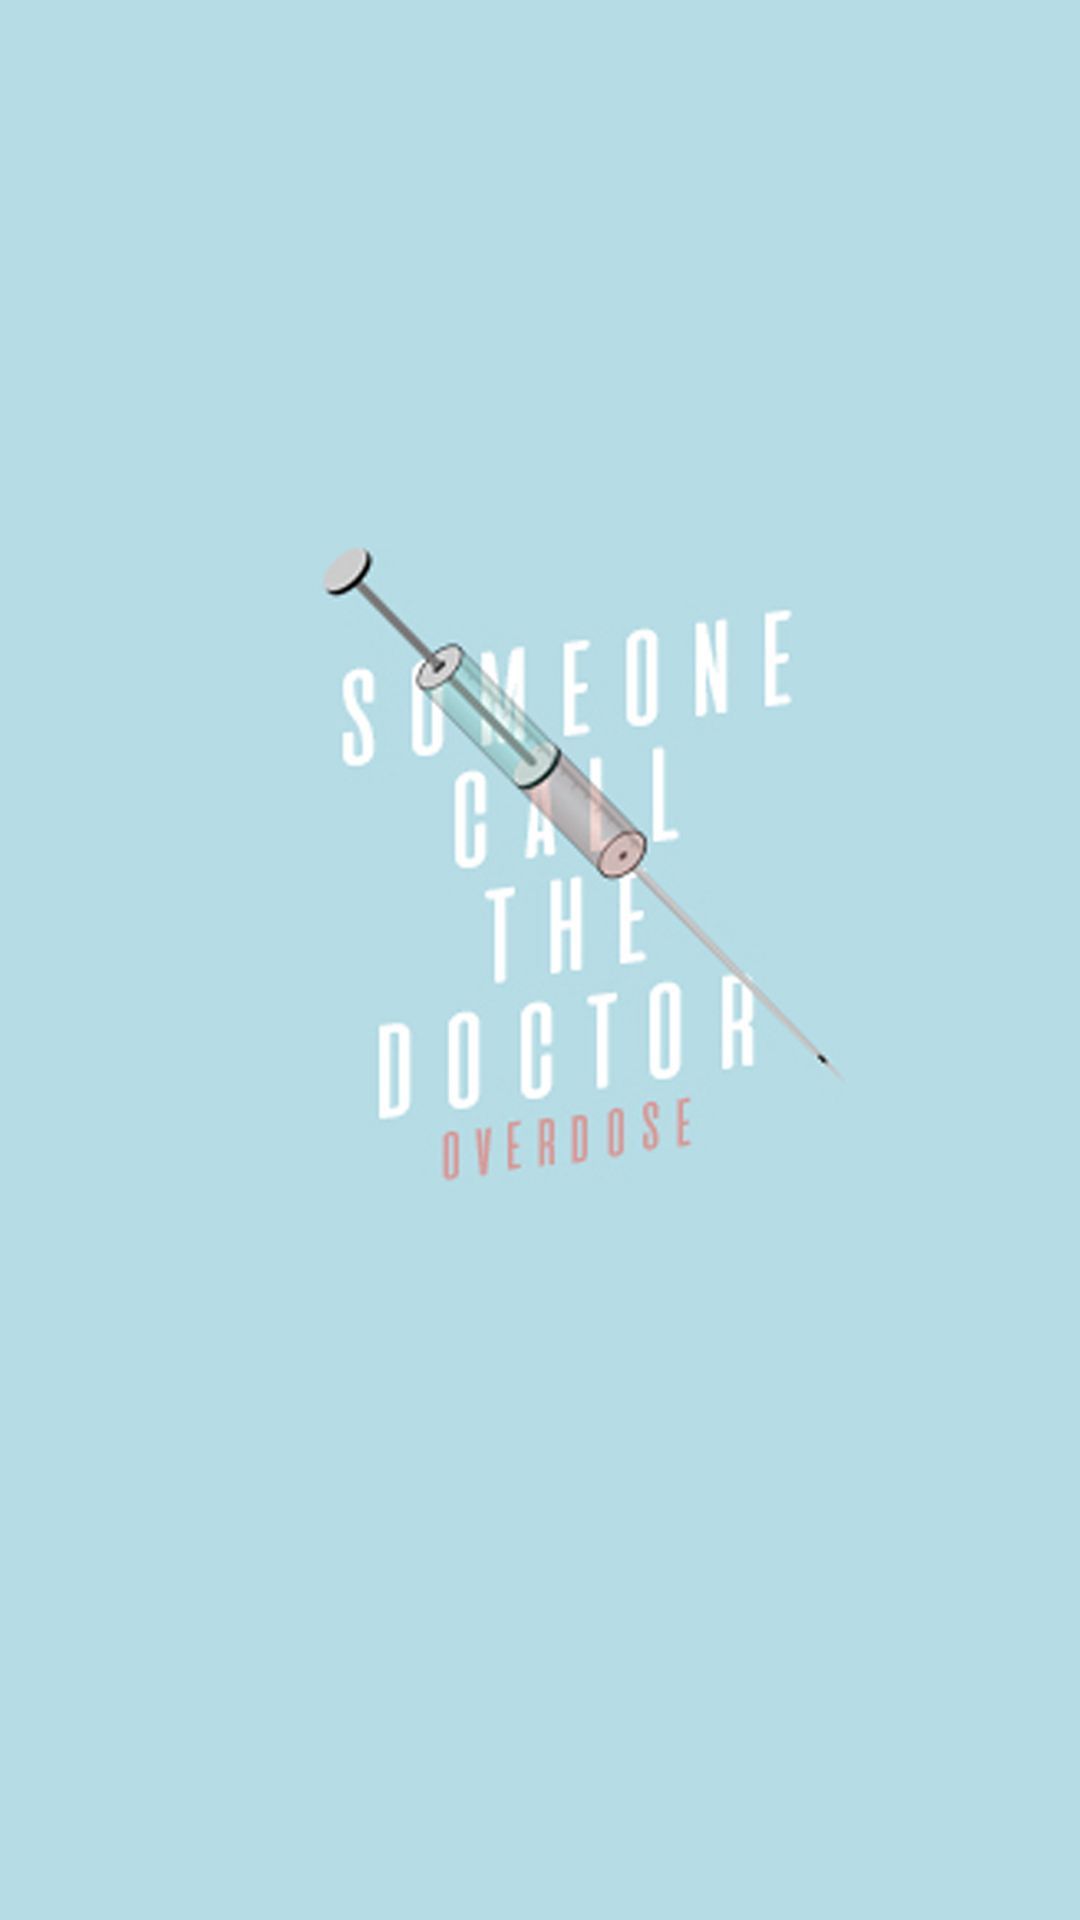 Tal vez los médicos también estén sobredosificados por #EXO #Overdose #EXODUS